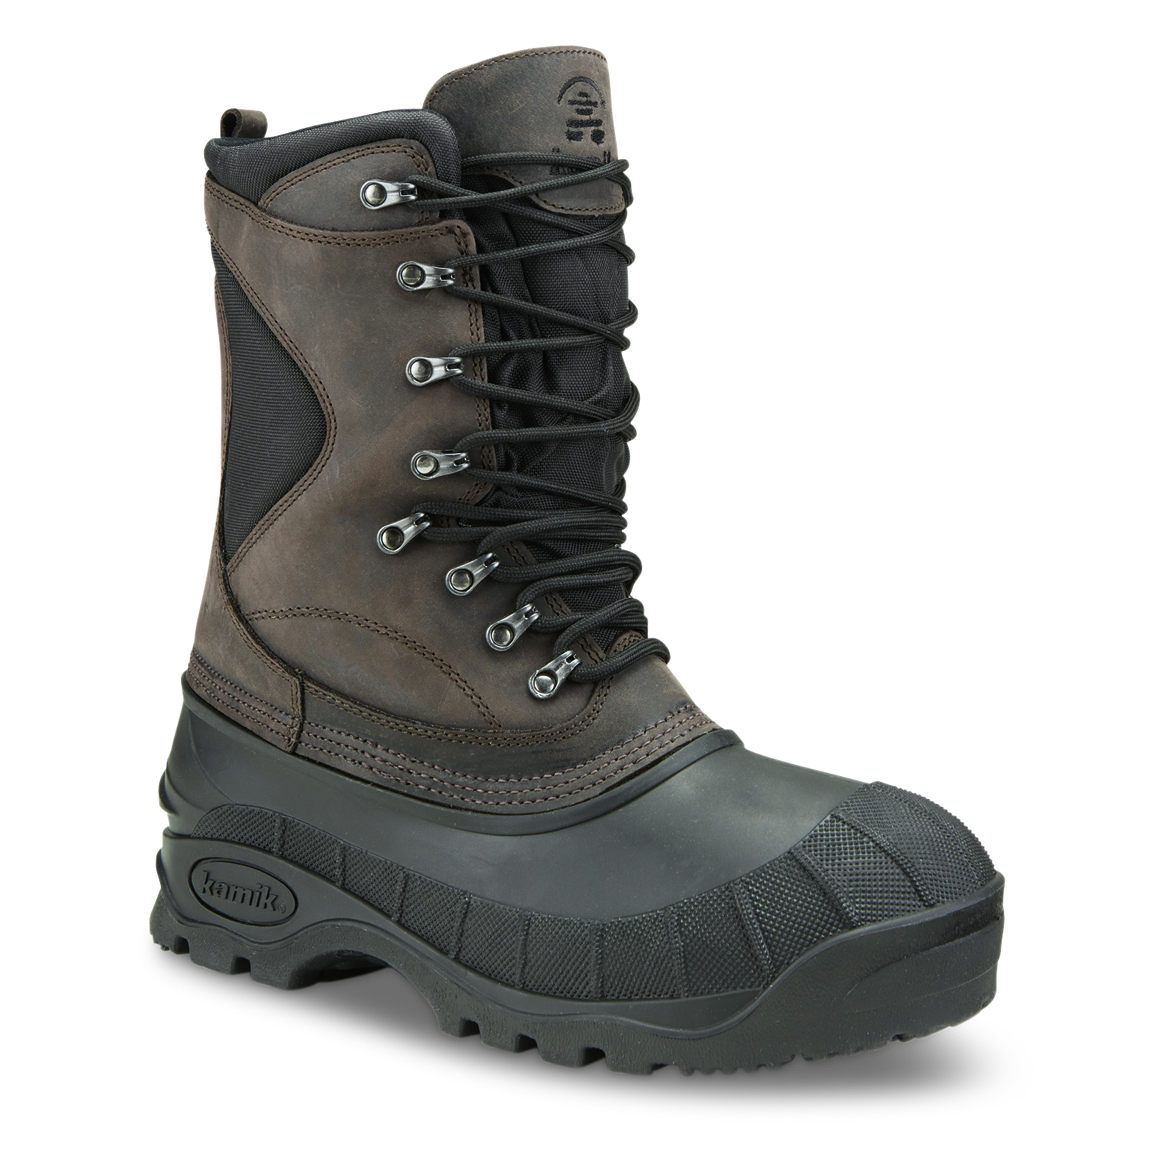 Kamik Men's Cody Waterproof Winter Boots, Dark Brown